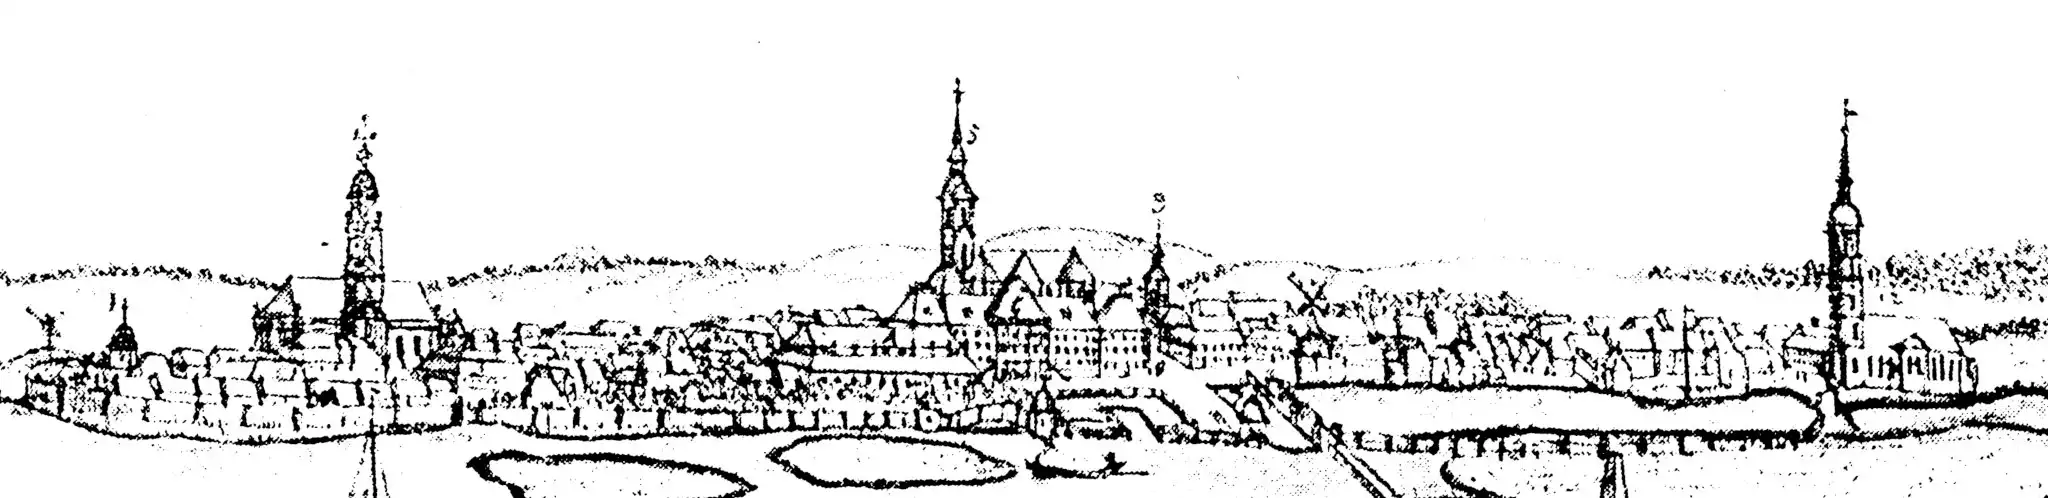 »Drei-Kirchen-Blick« vom Brauhausberg in Potsdam, um 1740